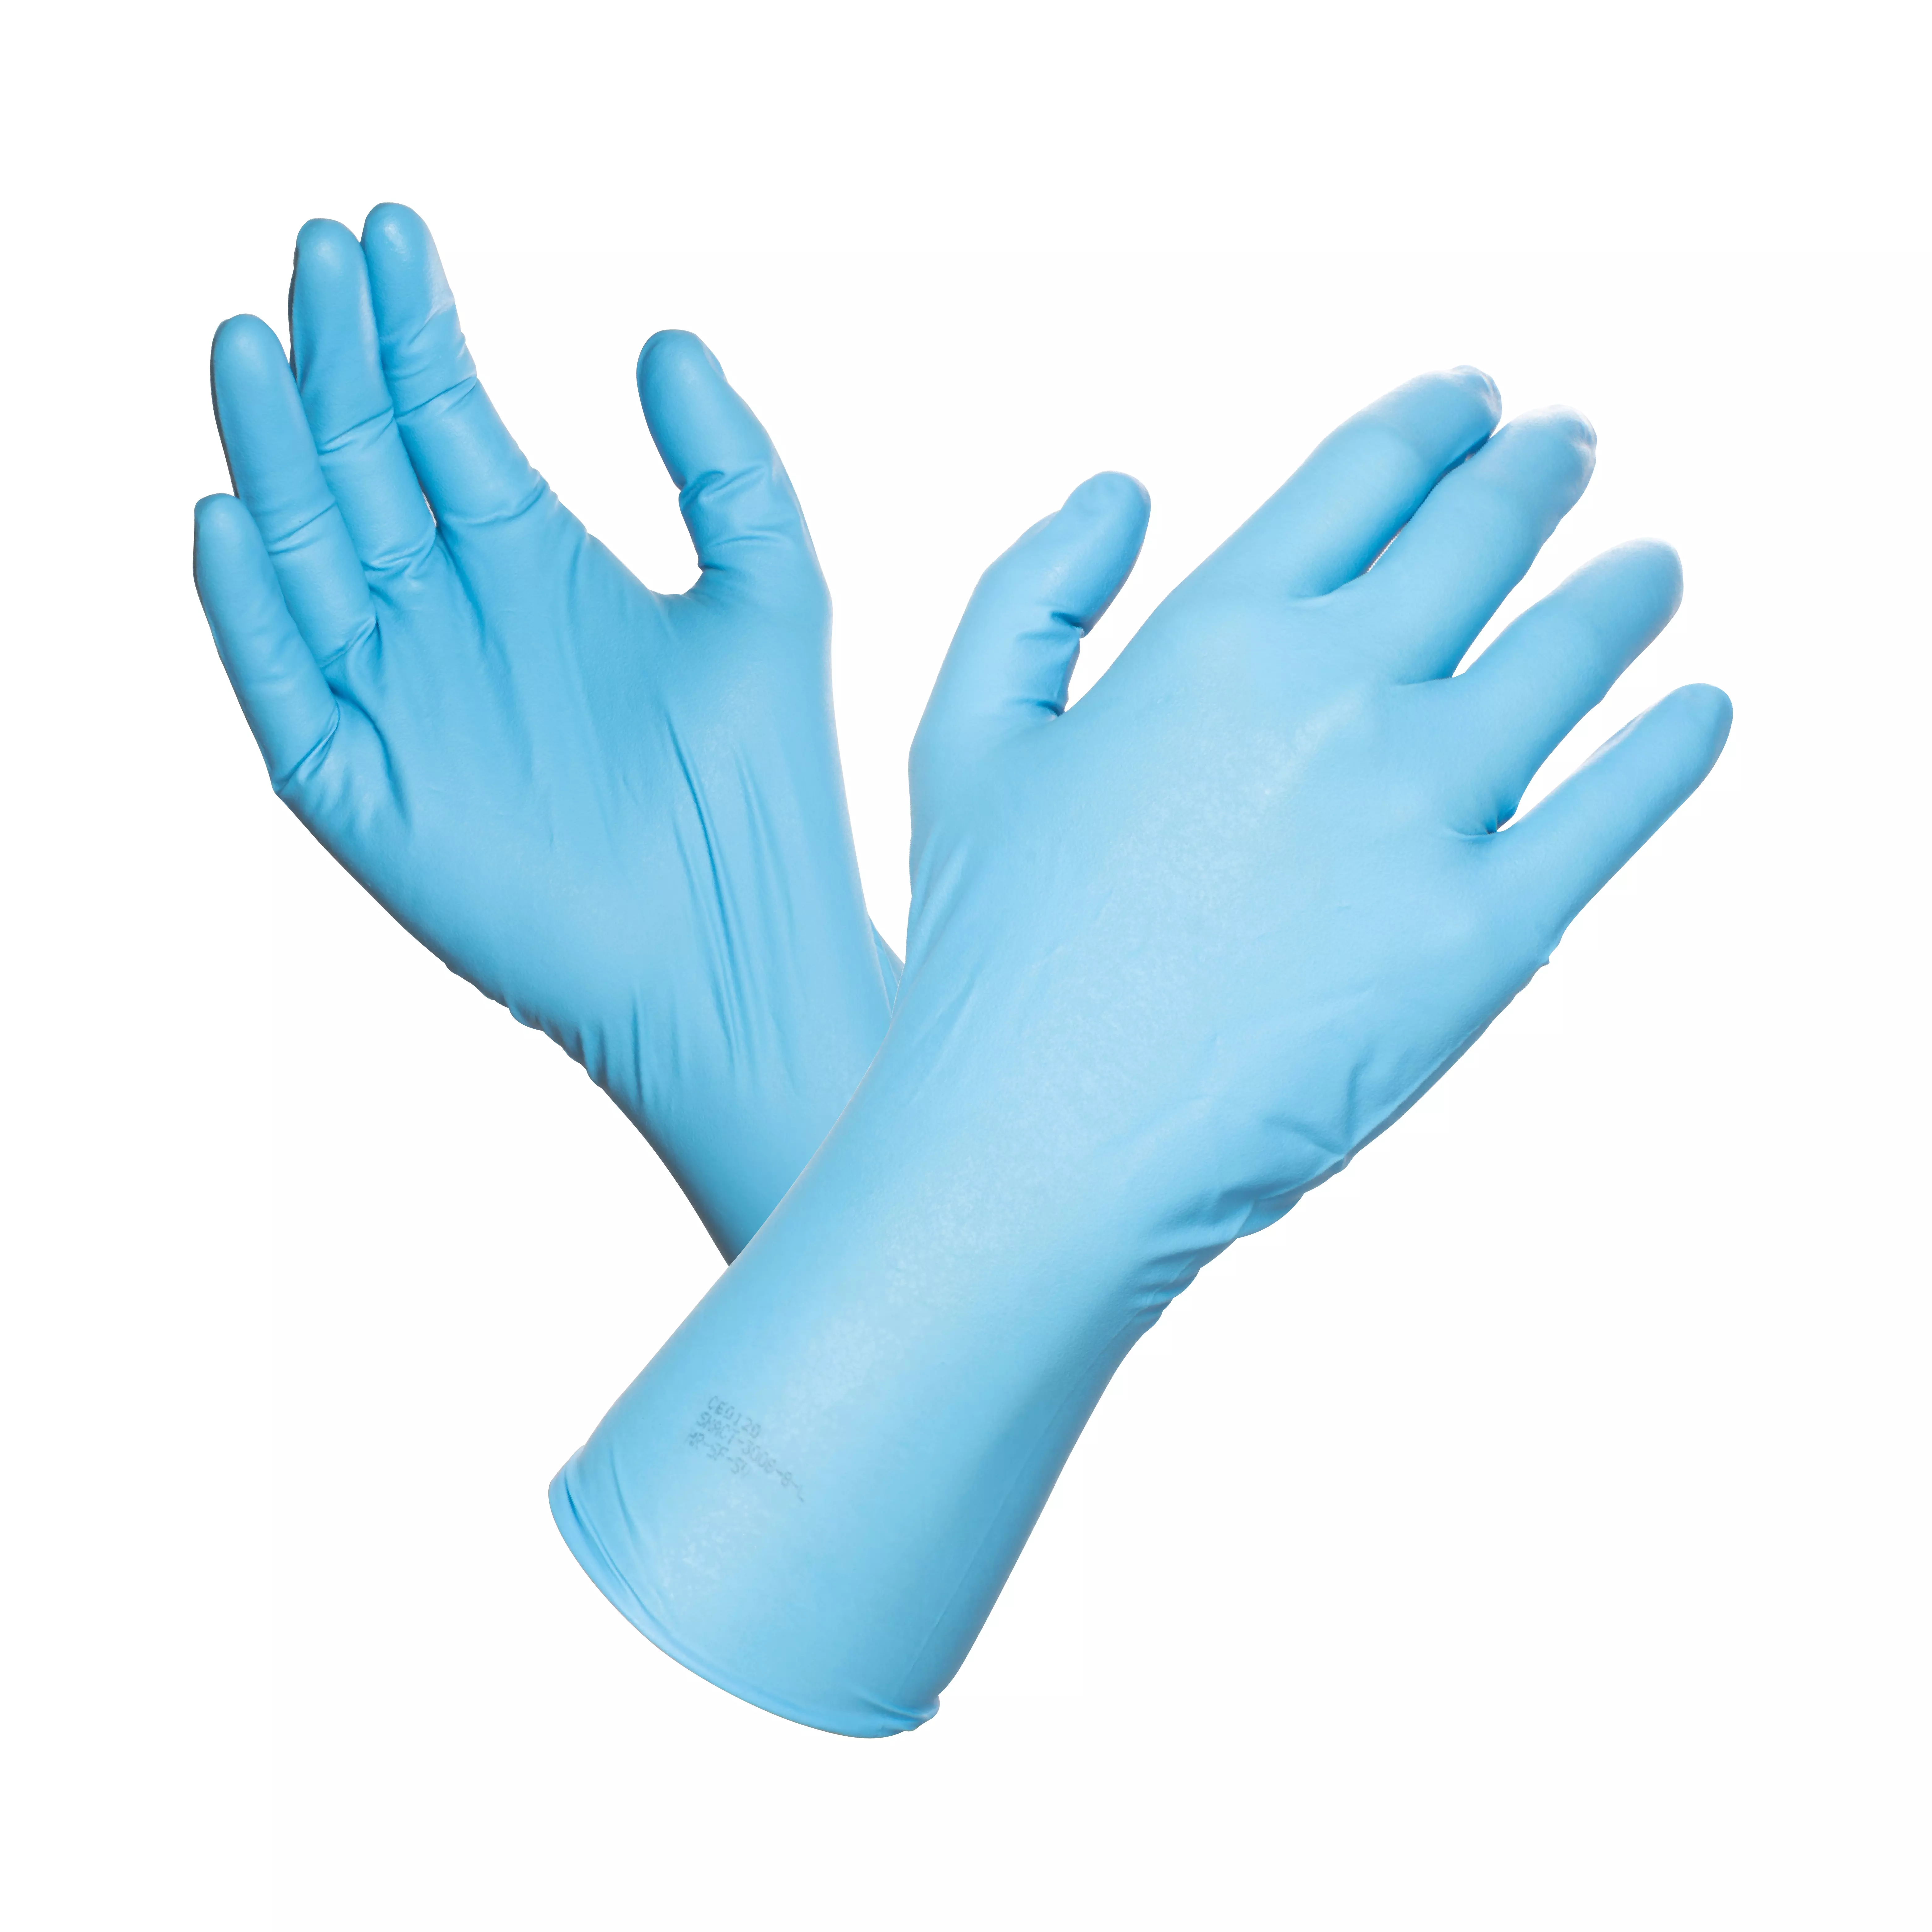 Einmal-Chemikalienschutzhandschuh Nitril Premium, 50 Stk - Blau, L (8-9)